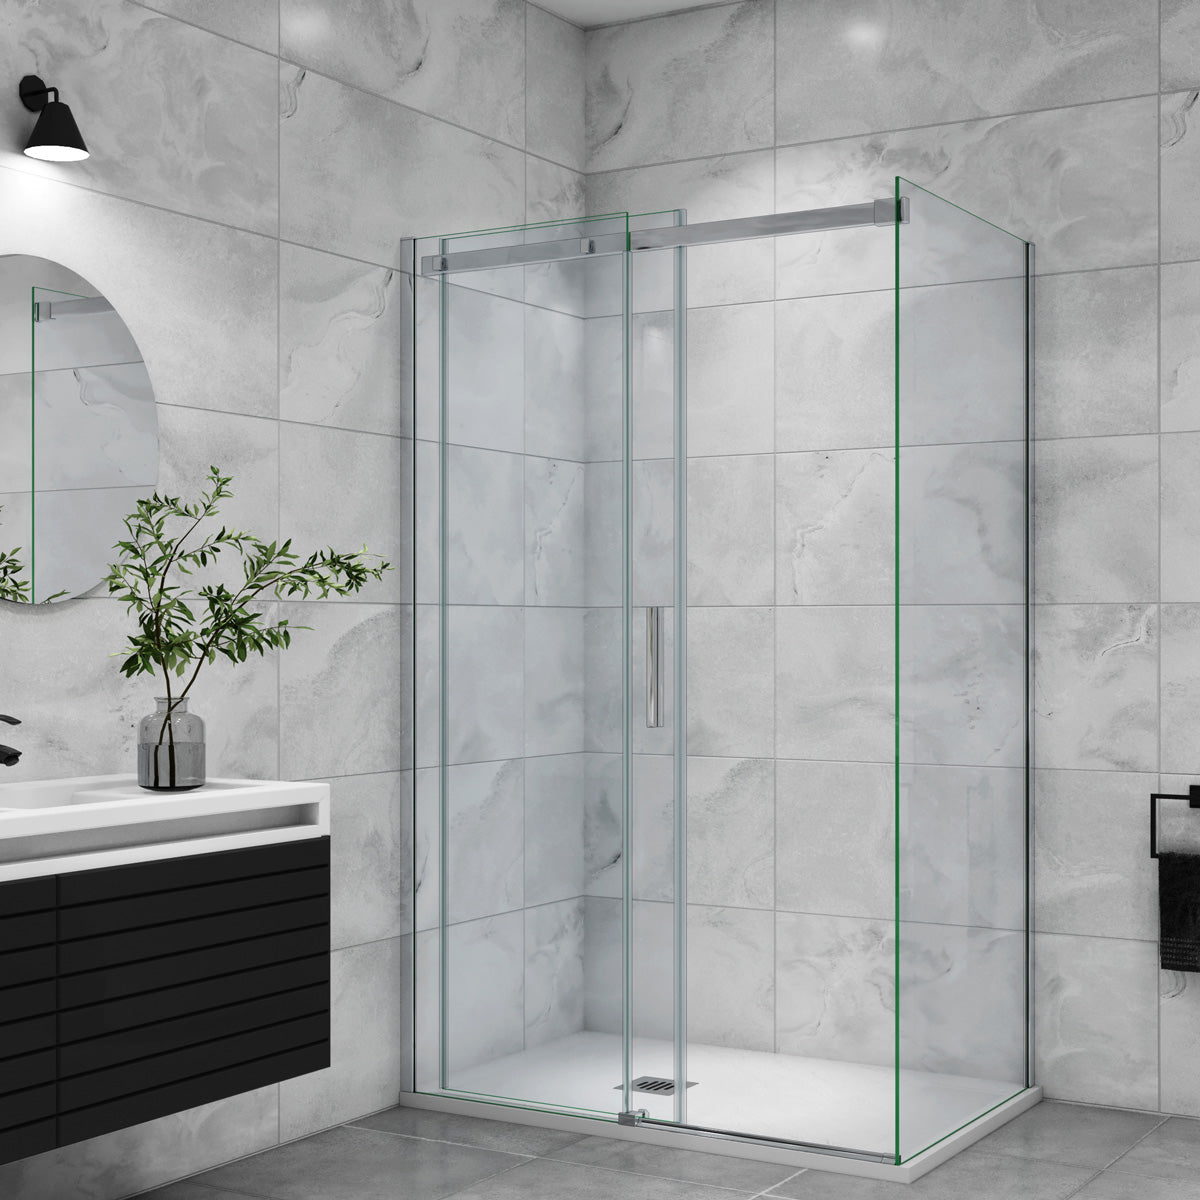 Duschtür+Seitenwand Schiebetür 140x90 cm Glasstärke 6mm Dusche Duschabtrennung Duschkabine